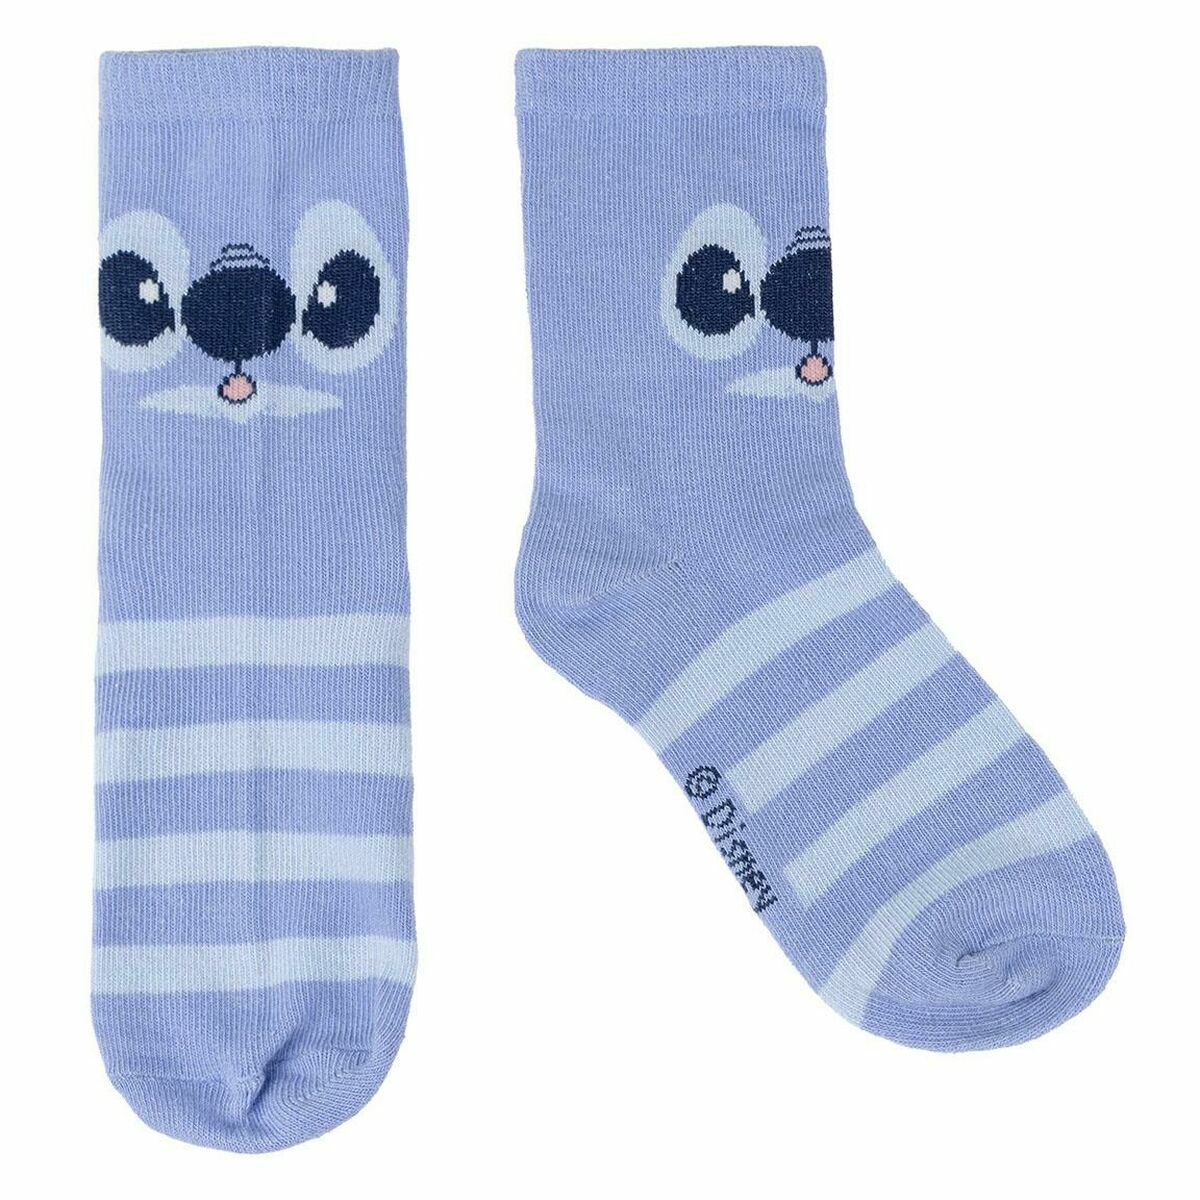 Socks Stitch 5 Pieces